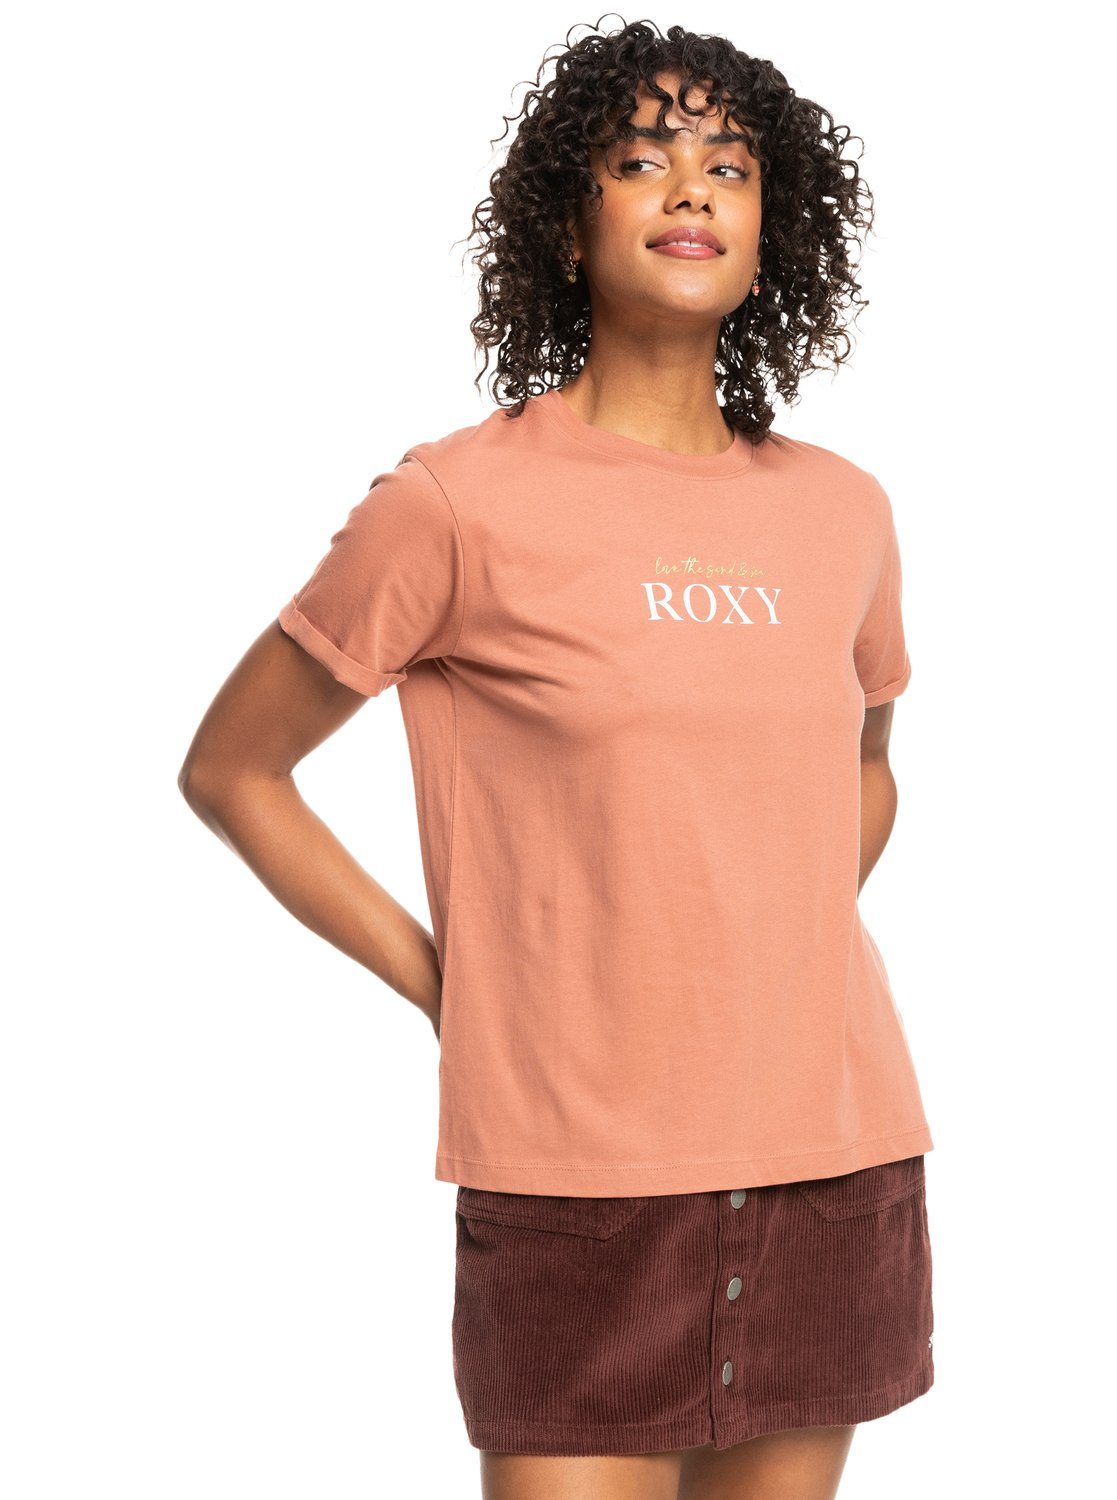 Roxy T-shirt Noon ocean